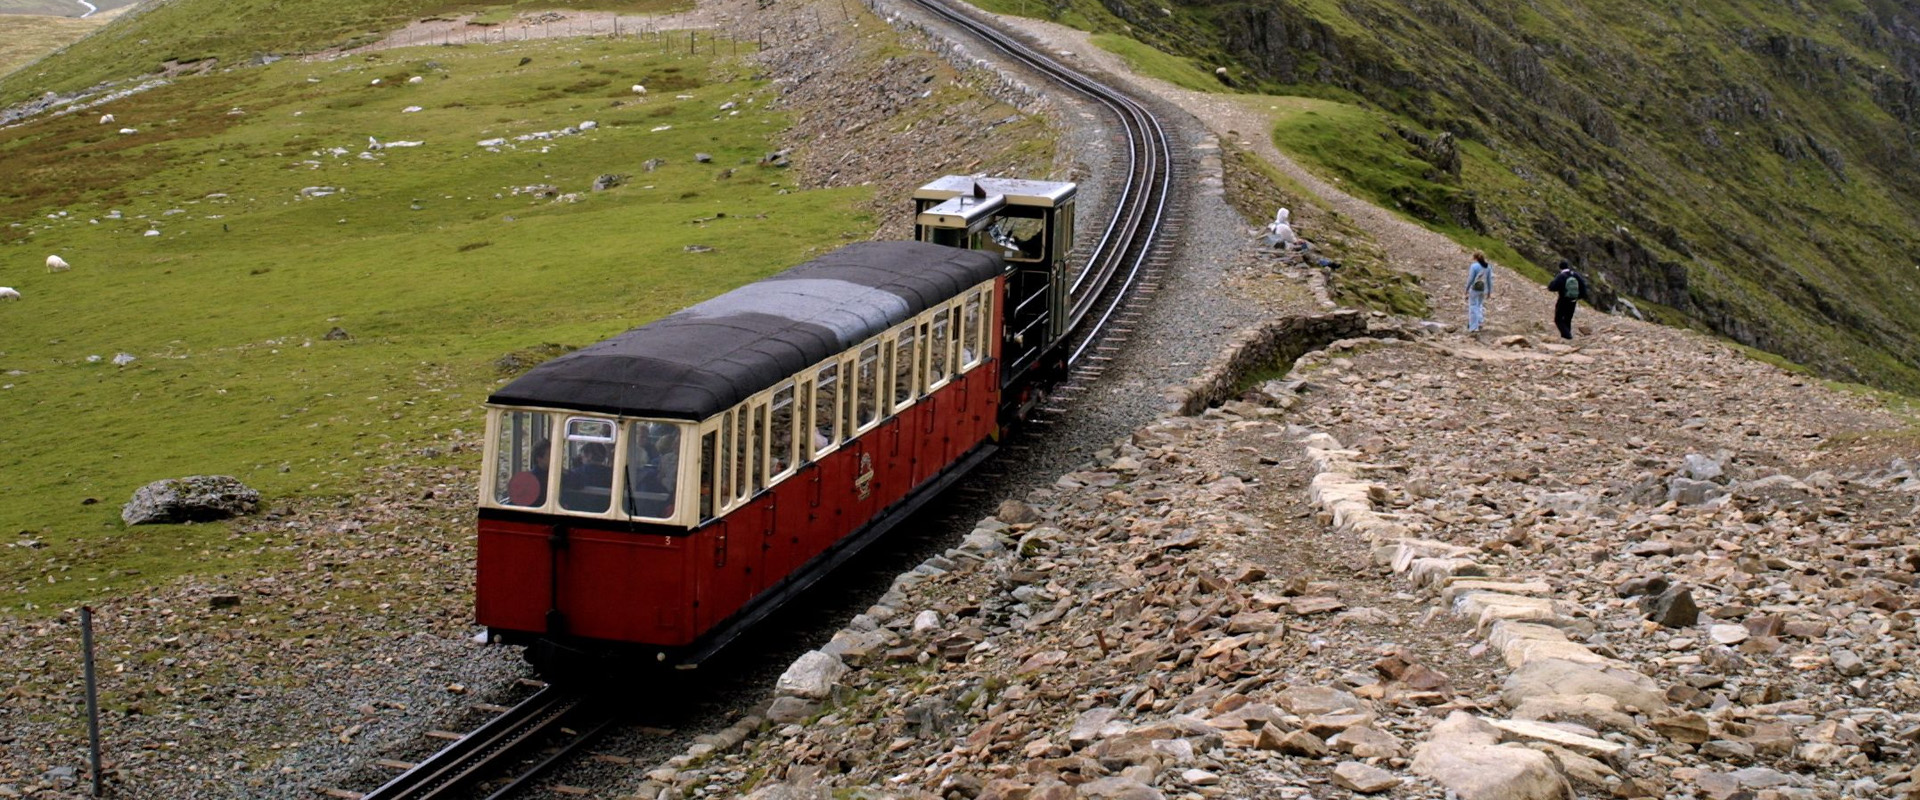 Should you take the Snowdon Mountain Railway?